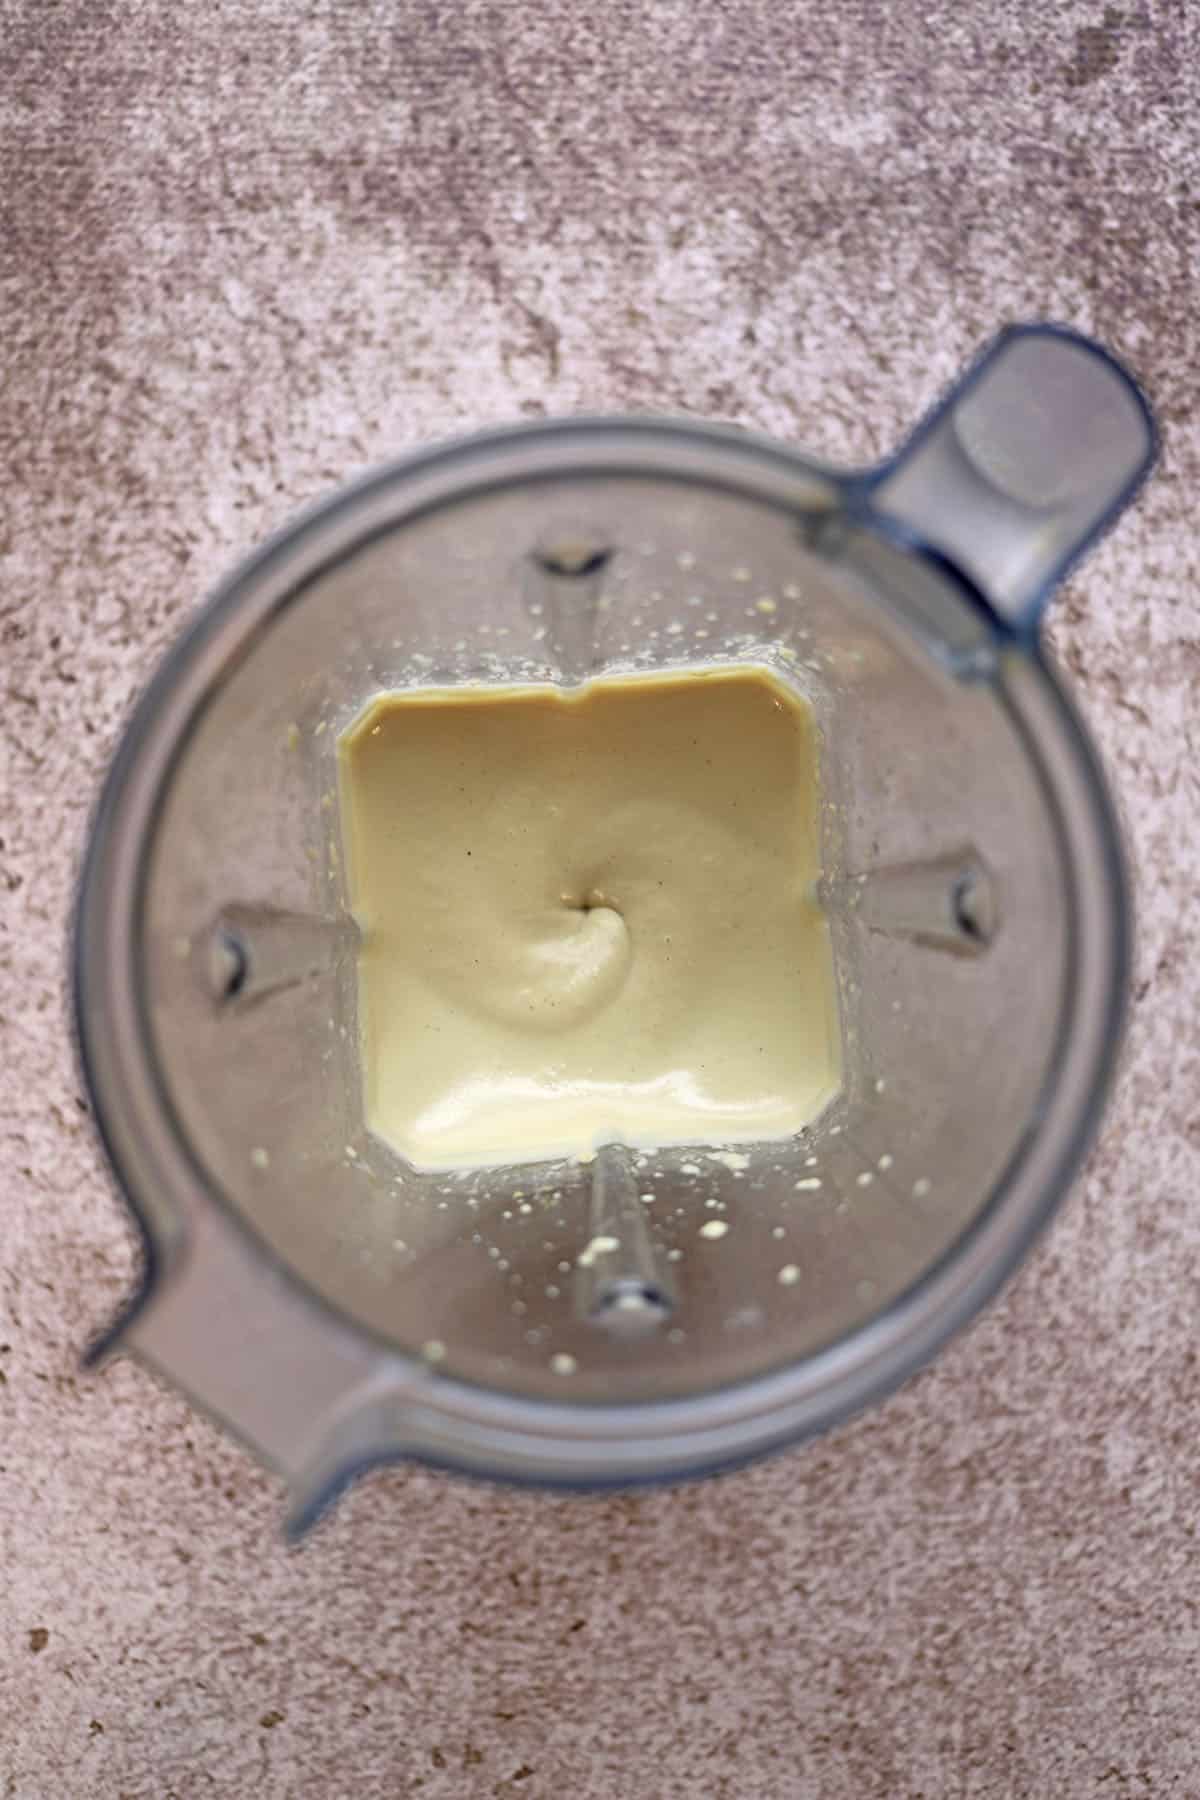 Blended cashew cream in blender pitcher.